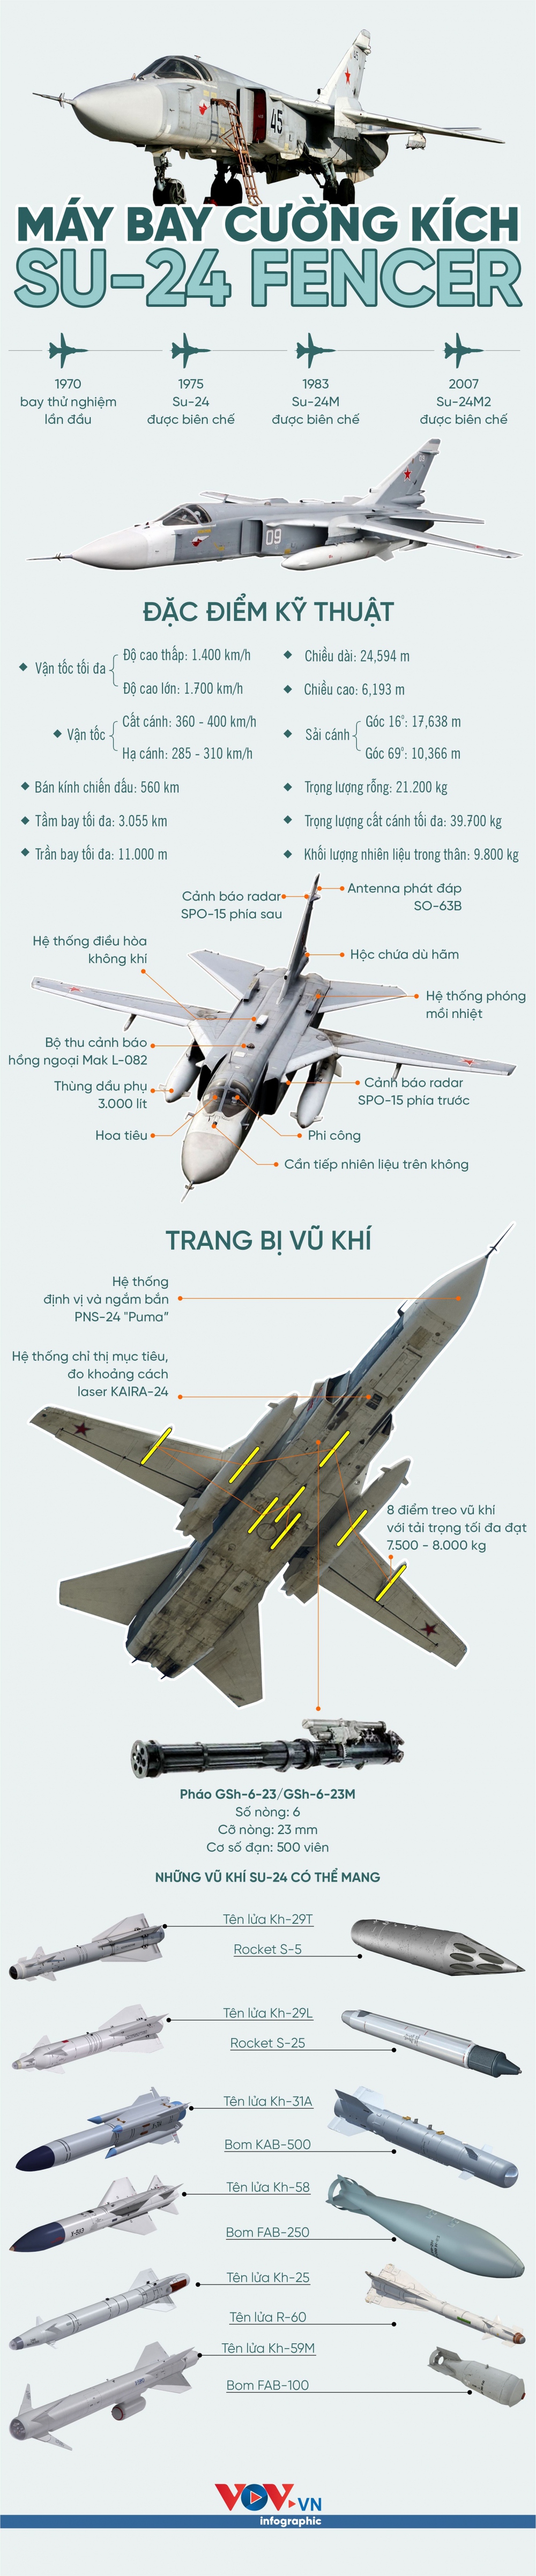 Tìm hiểu cường kích Su-24 được biên chế trong không quân Nga - Ảnh 1.